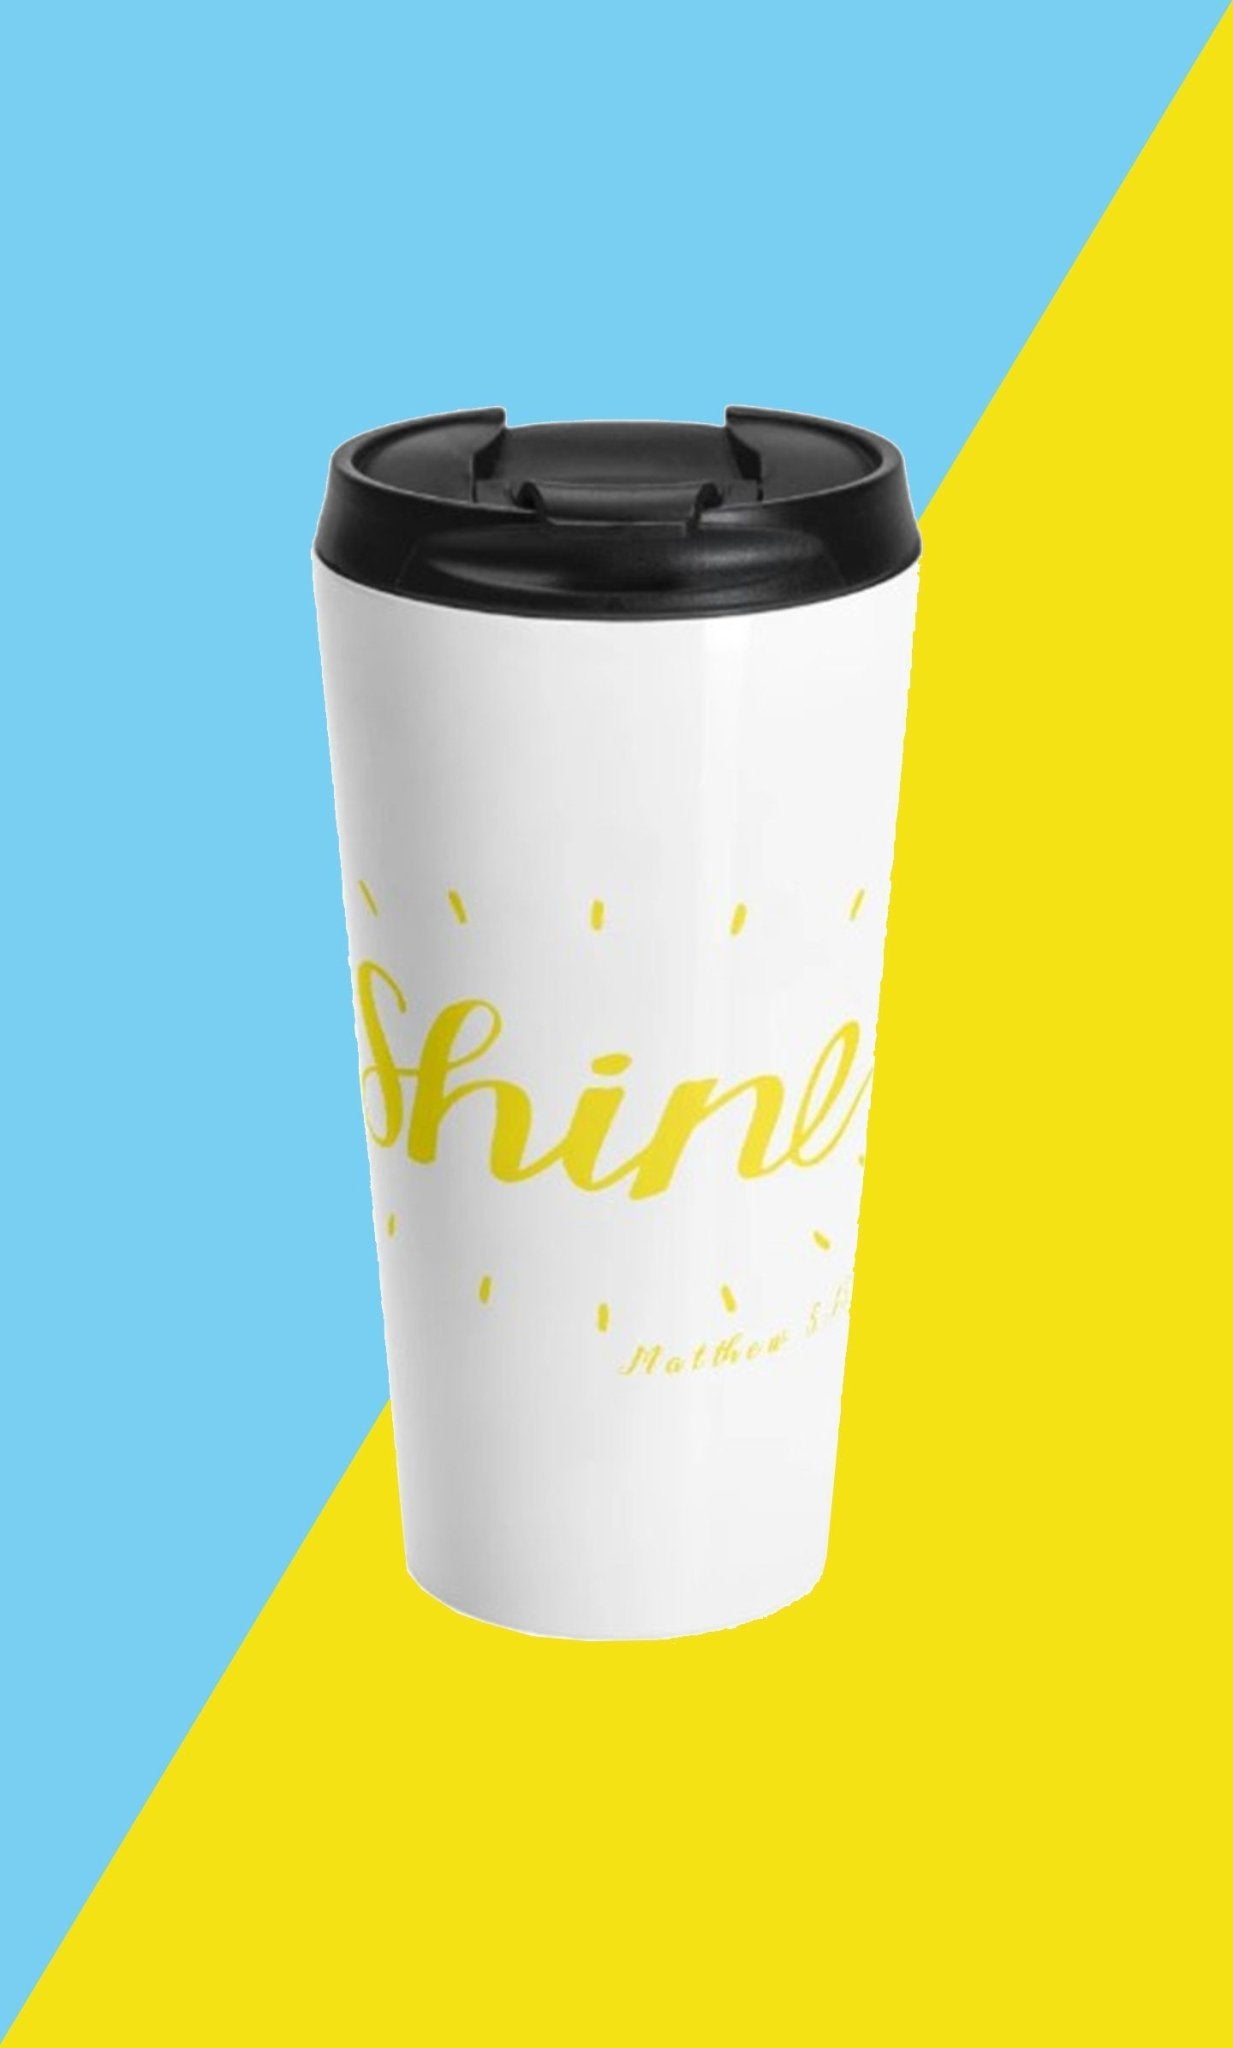 Shine - Travel Mug - Trini-T Ministries